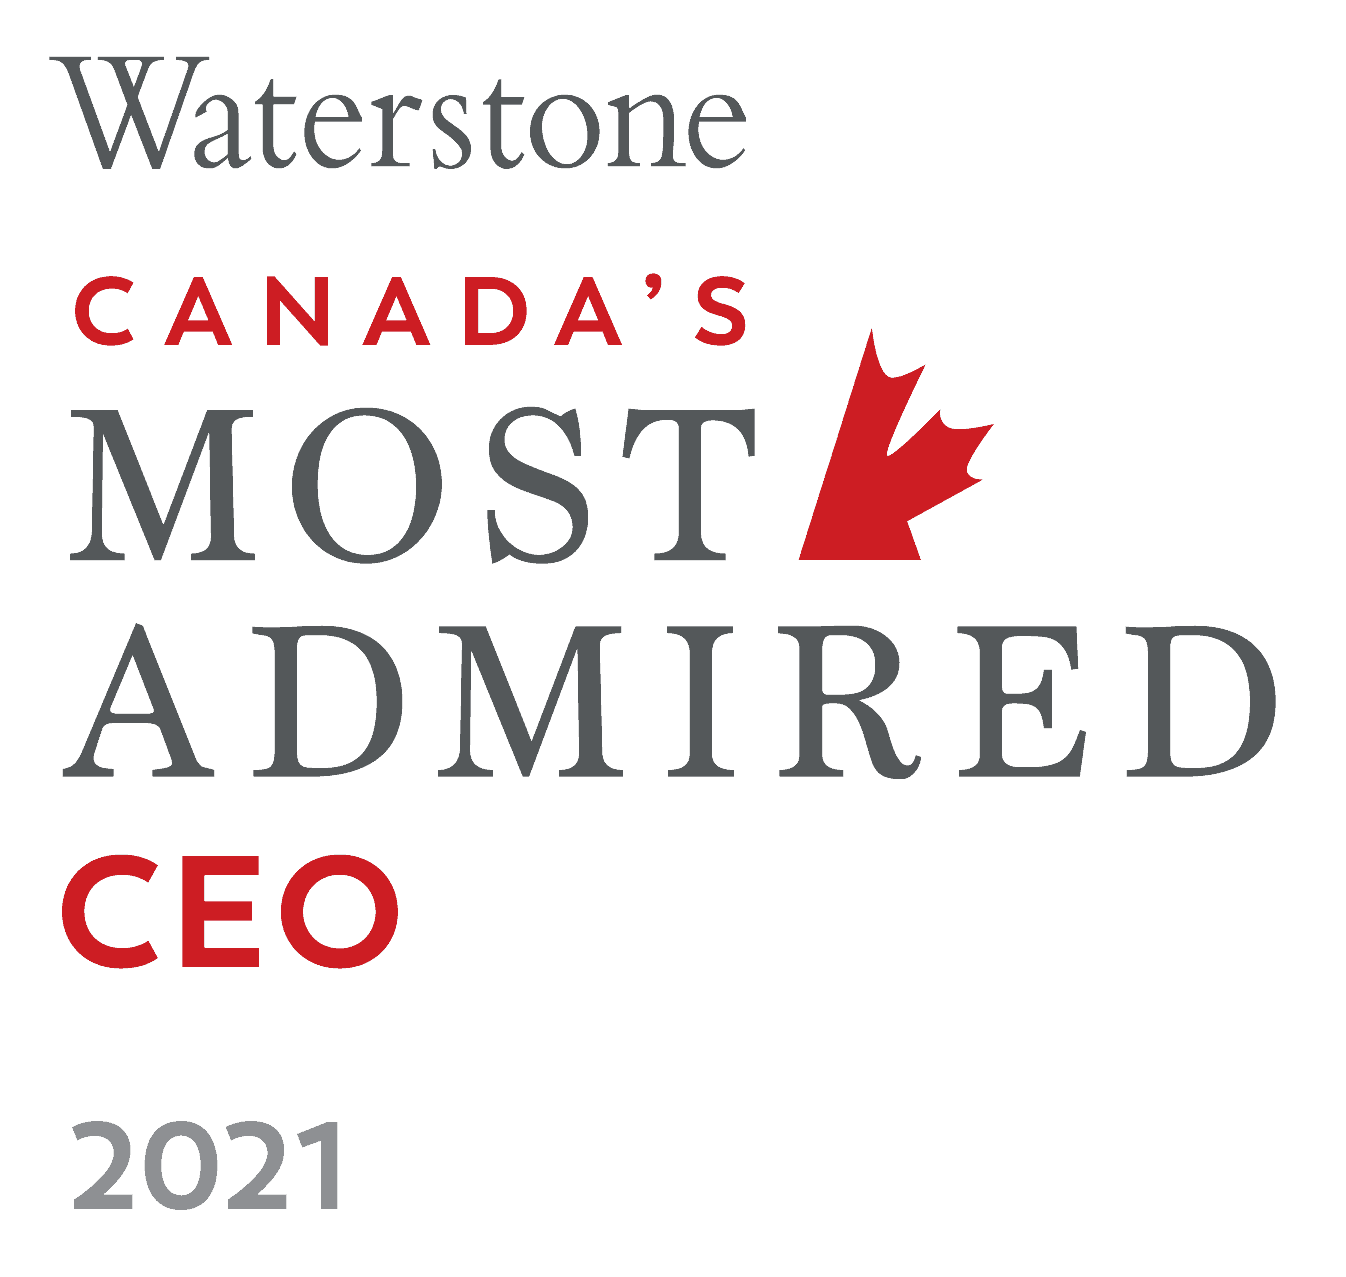 Waterstone awarded Zak Hemraj Canada's Most admired CEO 2021